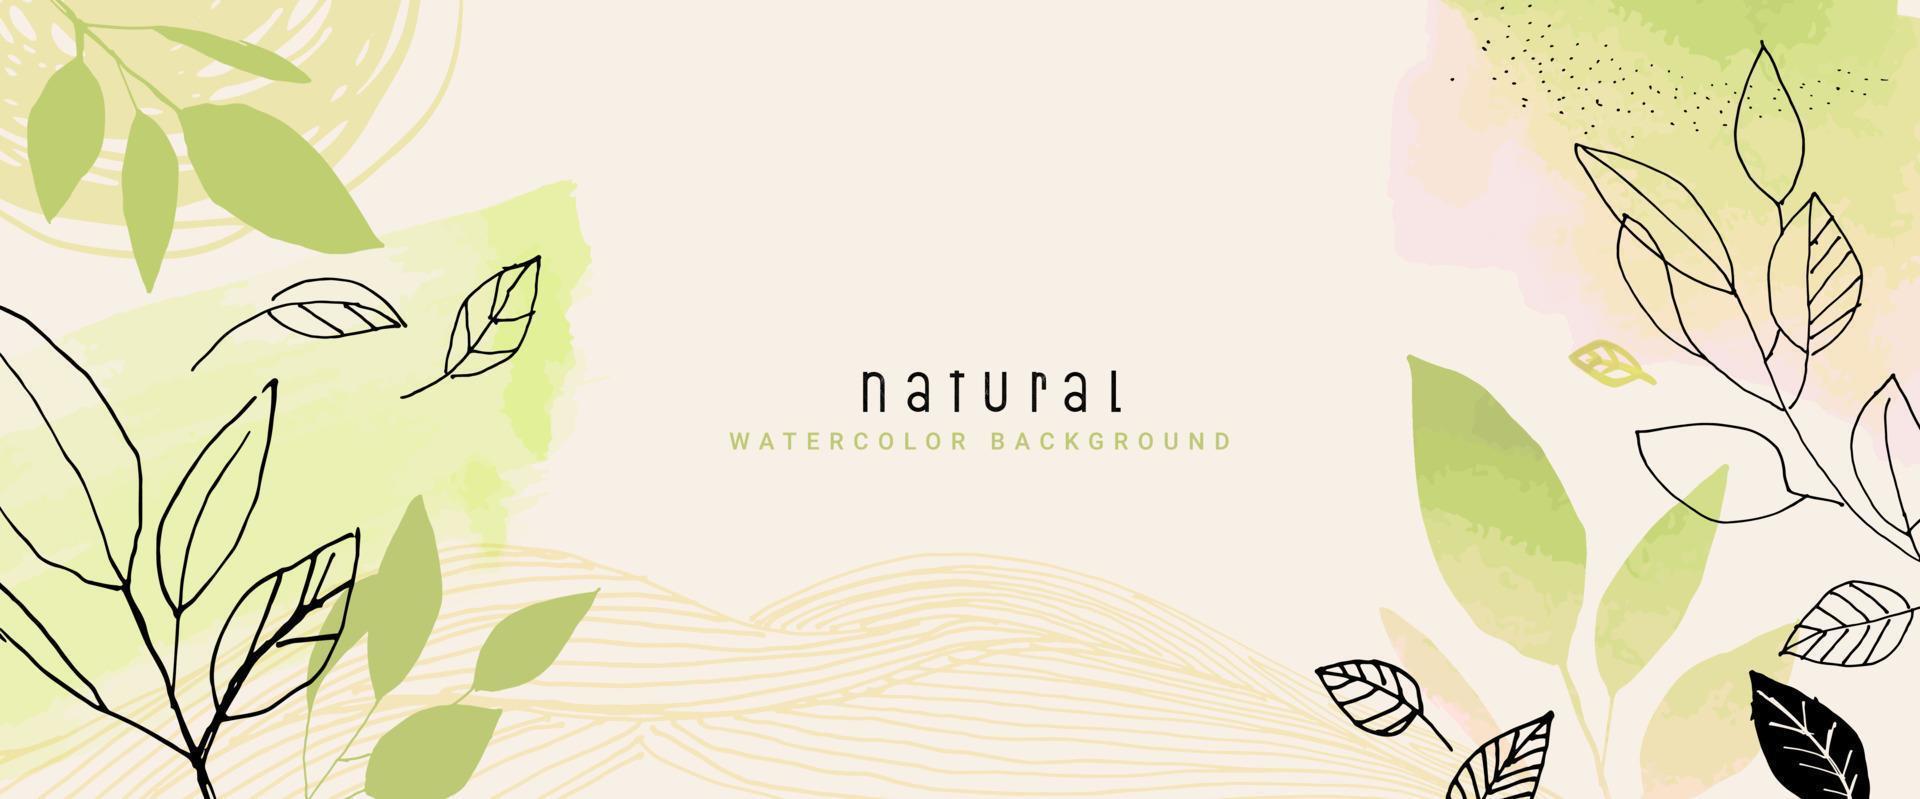 fundo de vetor aquarela natural para design gráfico e web, apresentação de negócios, marketing. ilustração desenhada à mão para produtos naturais e orgânicos, beleza e moda, cosméticos e bem-estar.